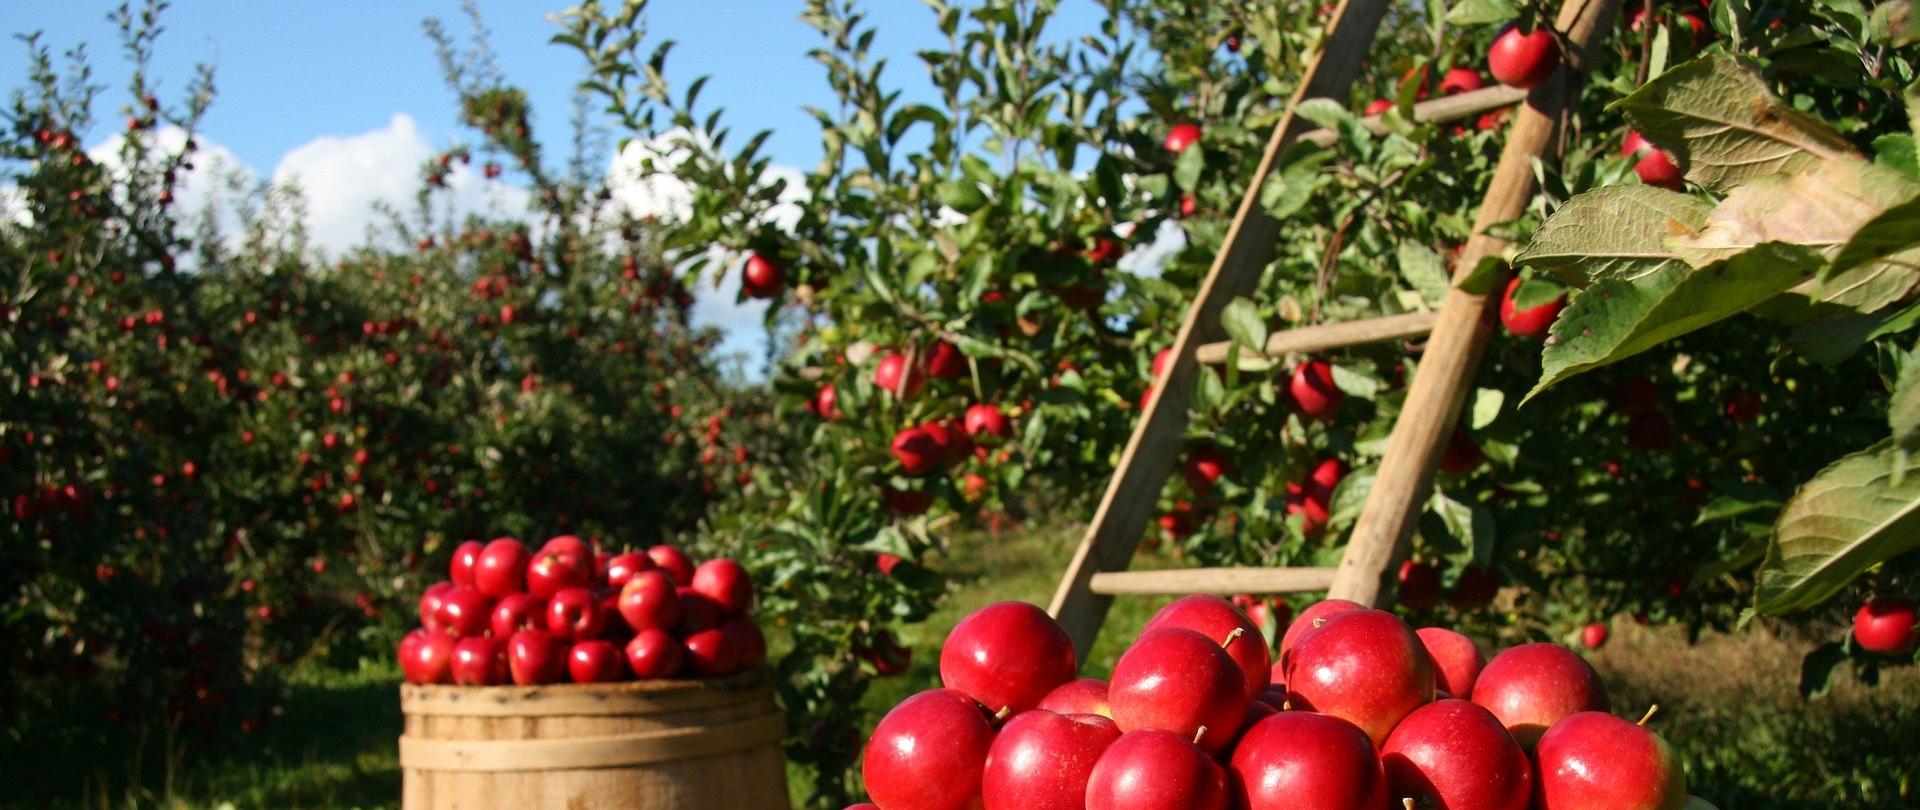 jabłonie w sadzie, na pierwszym planie 2 beczki wypełnione czerwonymi jabłkami, za nimi drabina oparta o drzewo